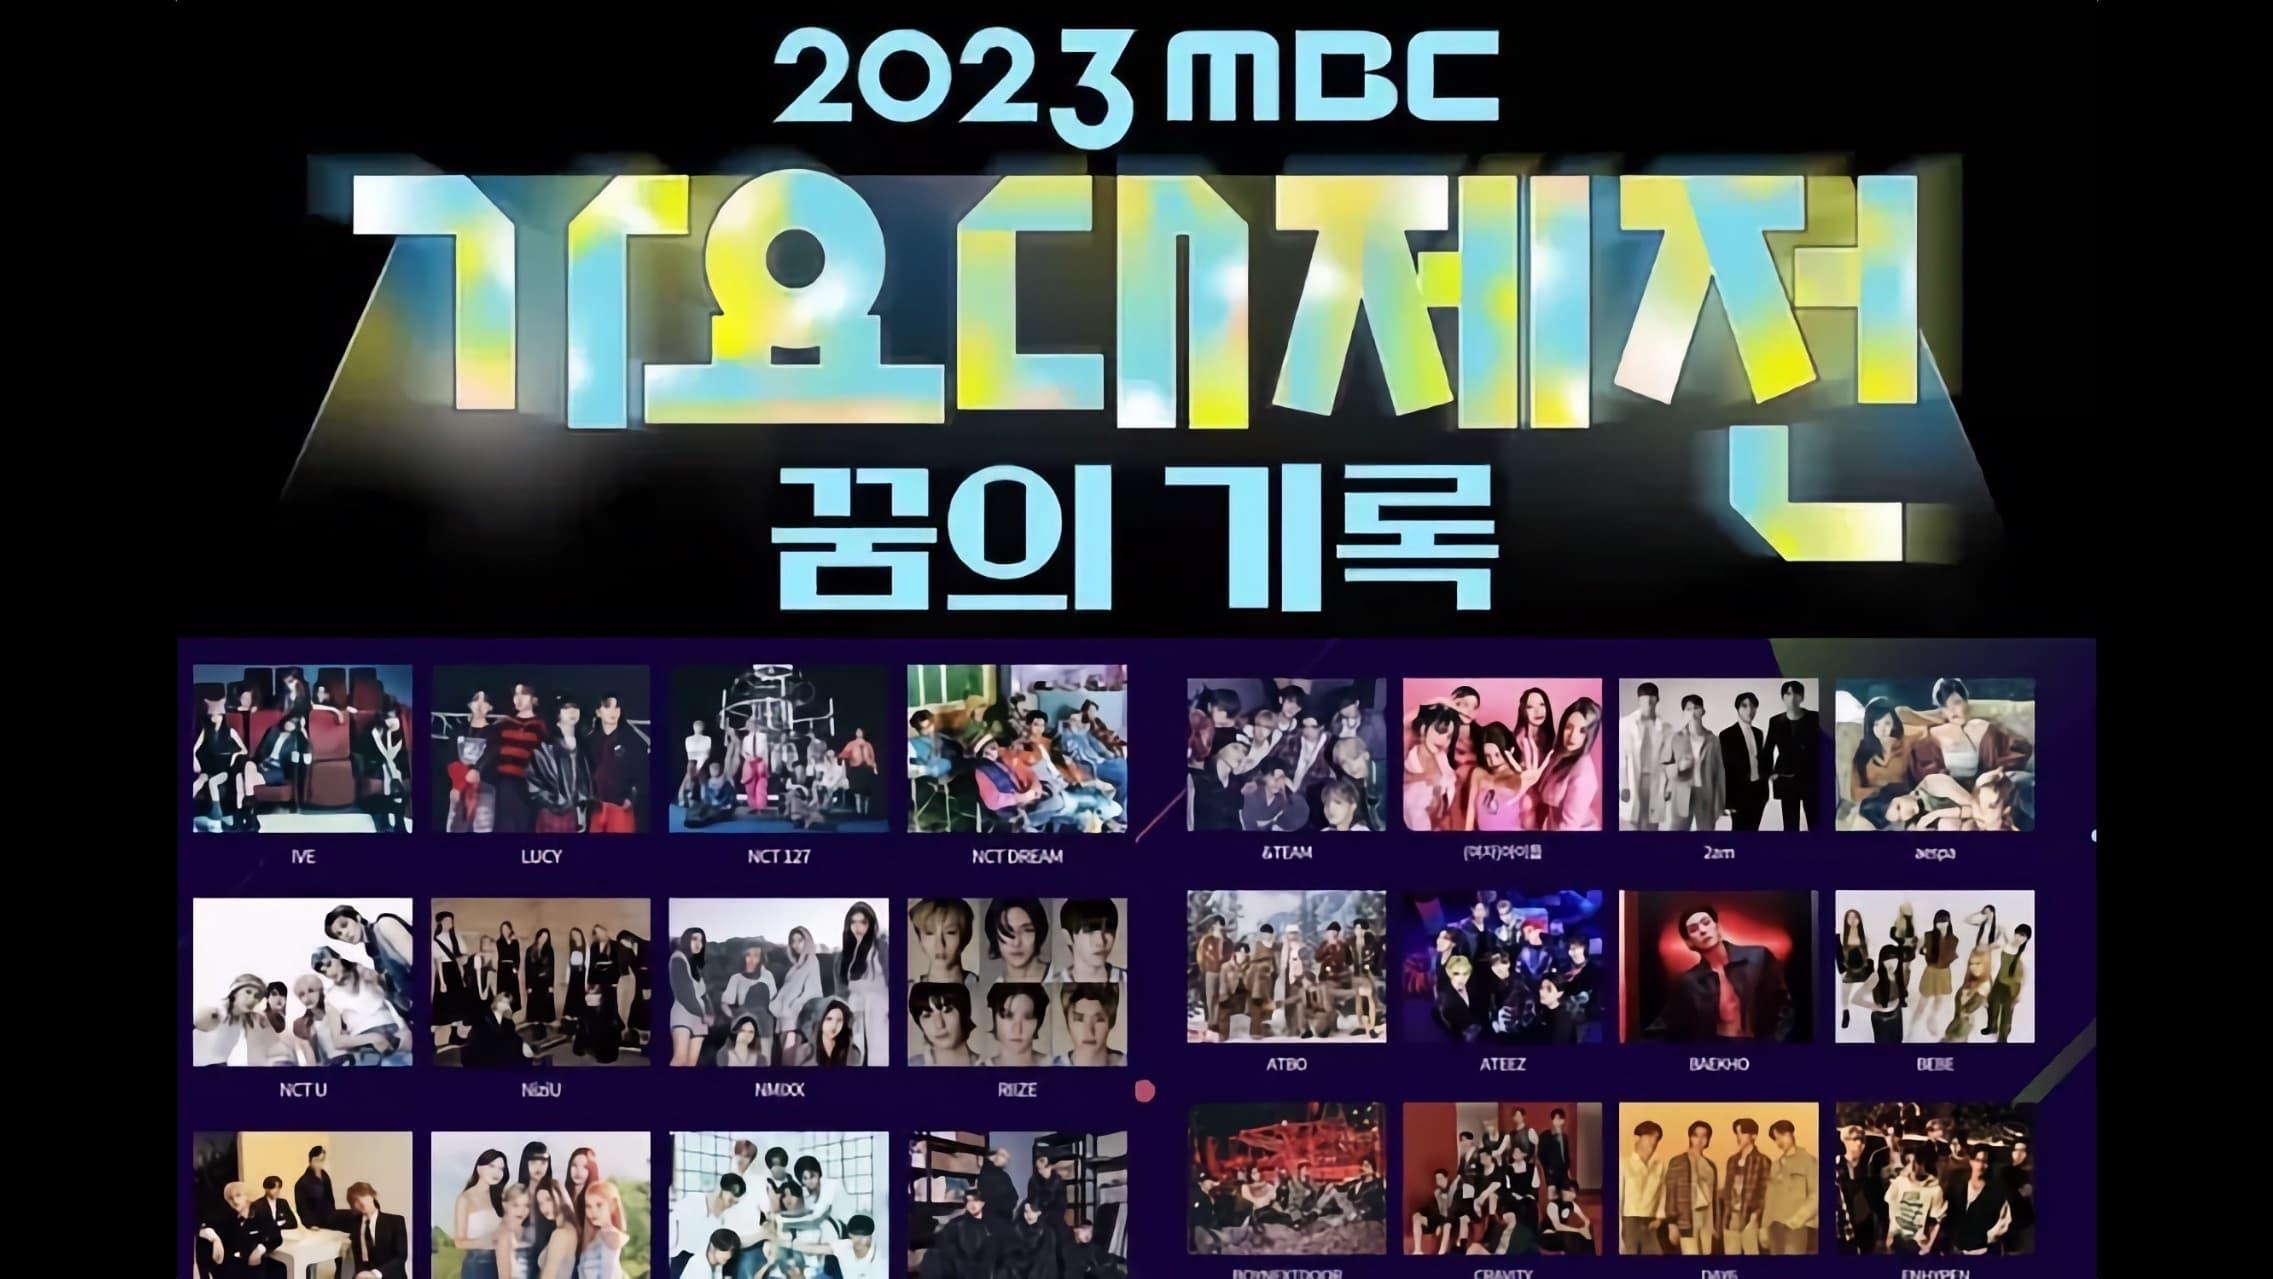 2023 MBC Gayo Daejeon backdrop